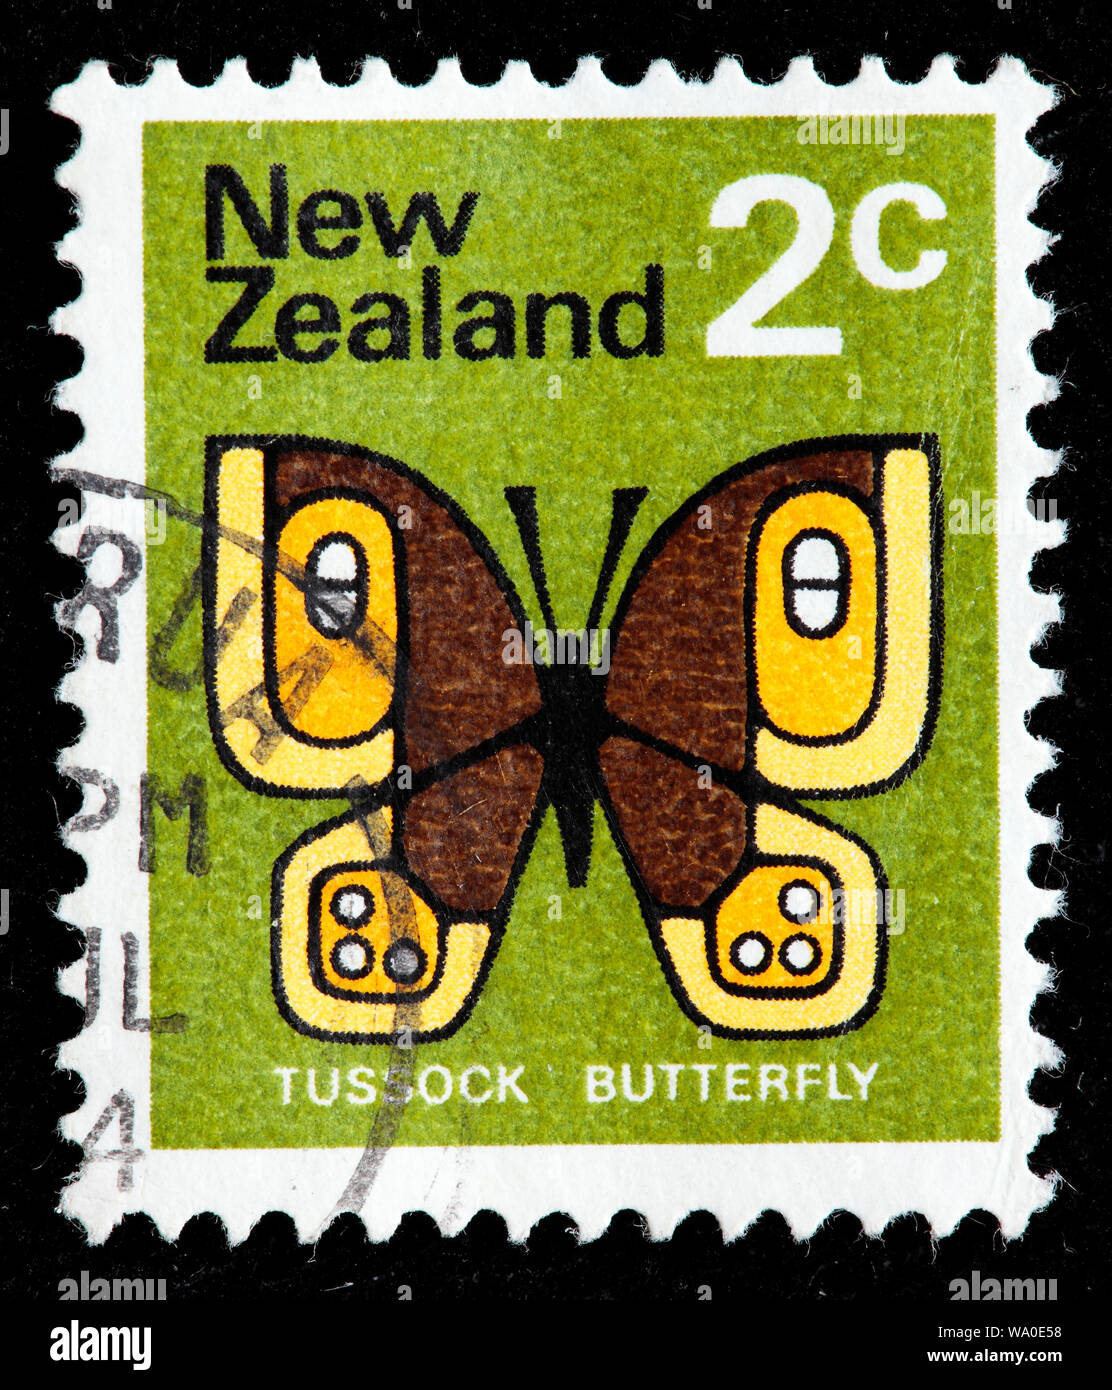 Le stipe commun, Argyropenga antipodum, timbre-poste, Nouvelle-Zélande, 1970 Banque D'Images